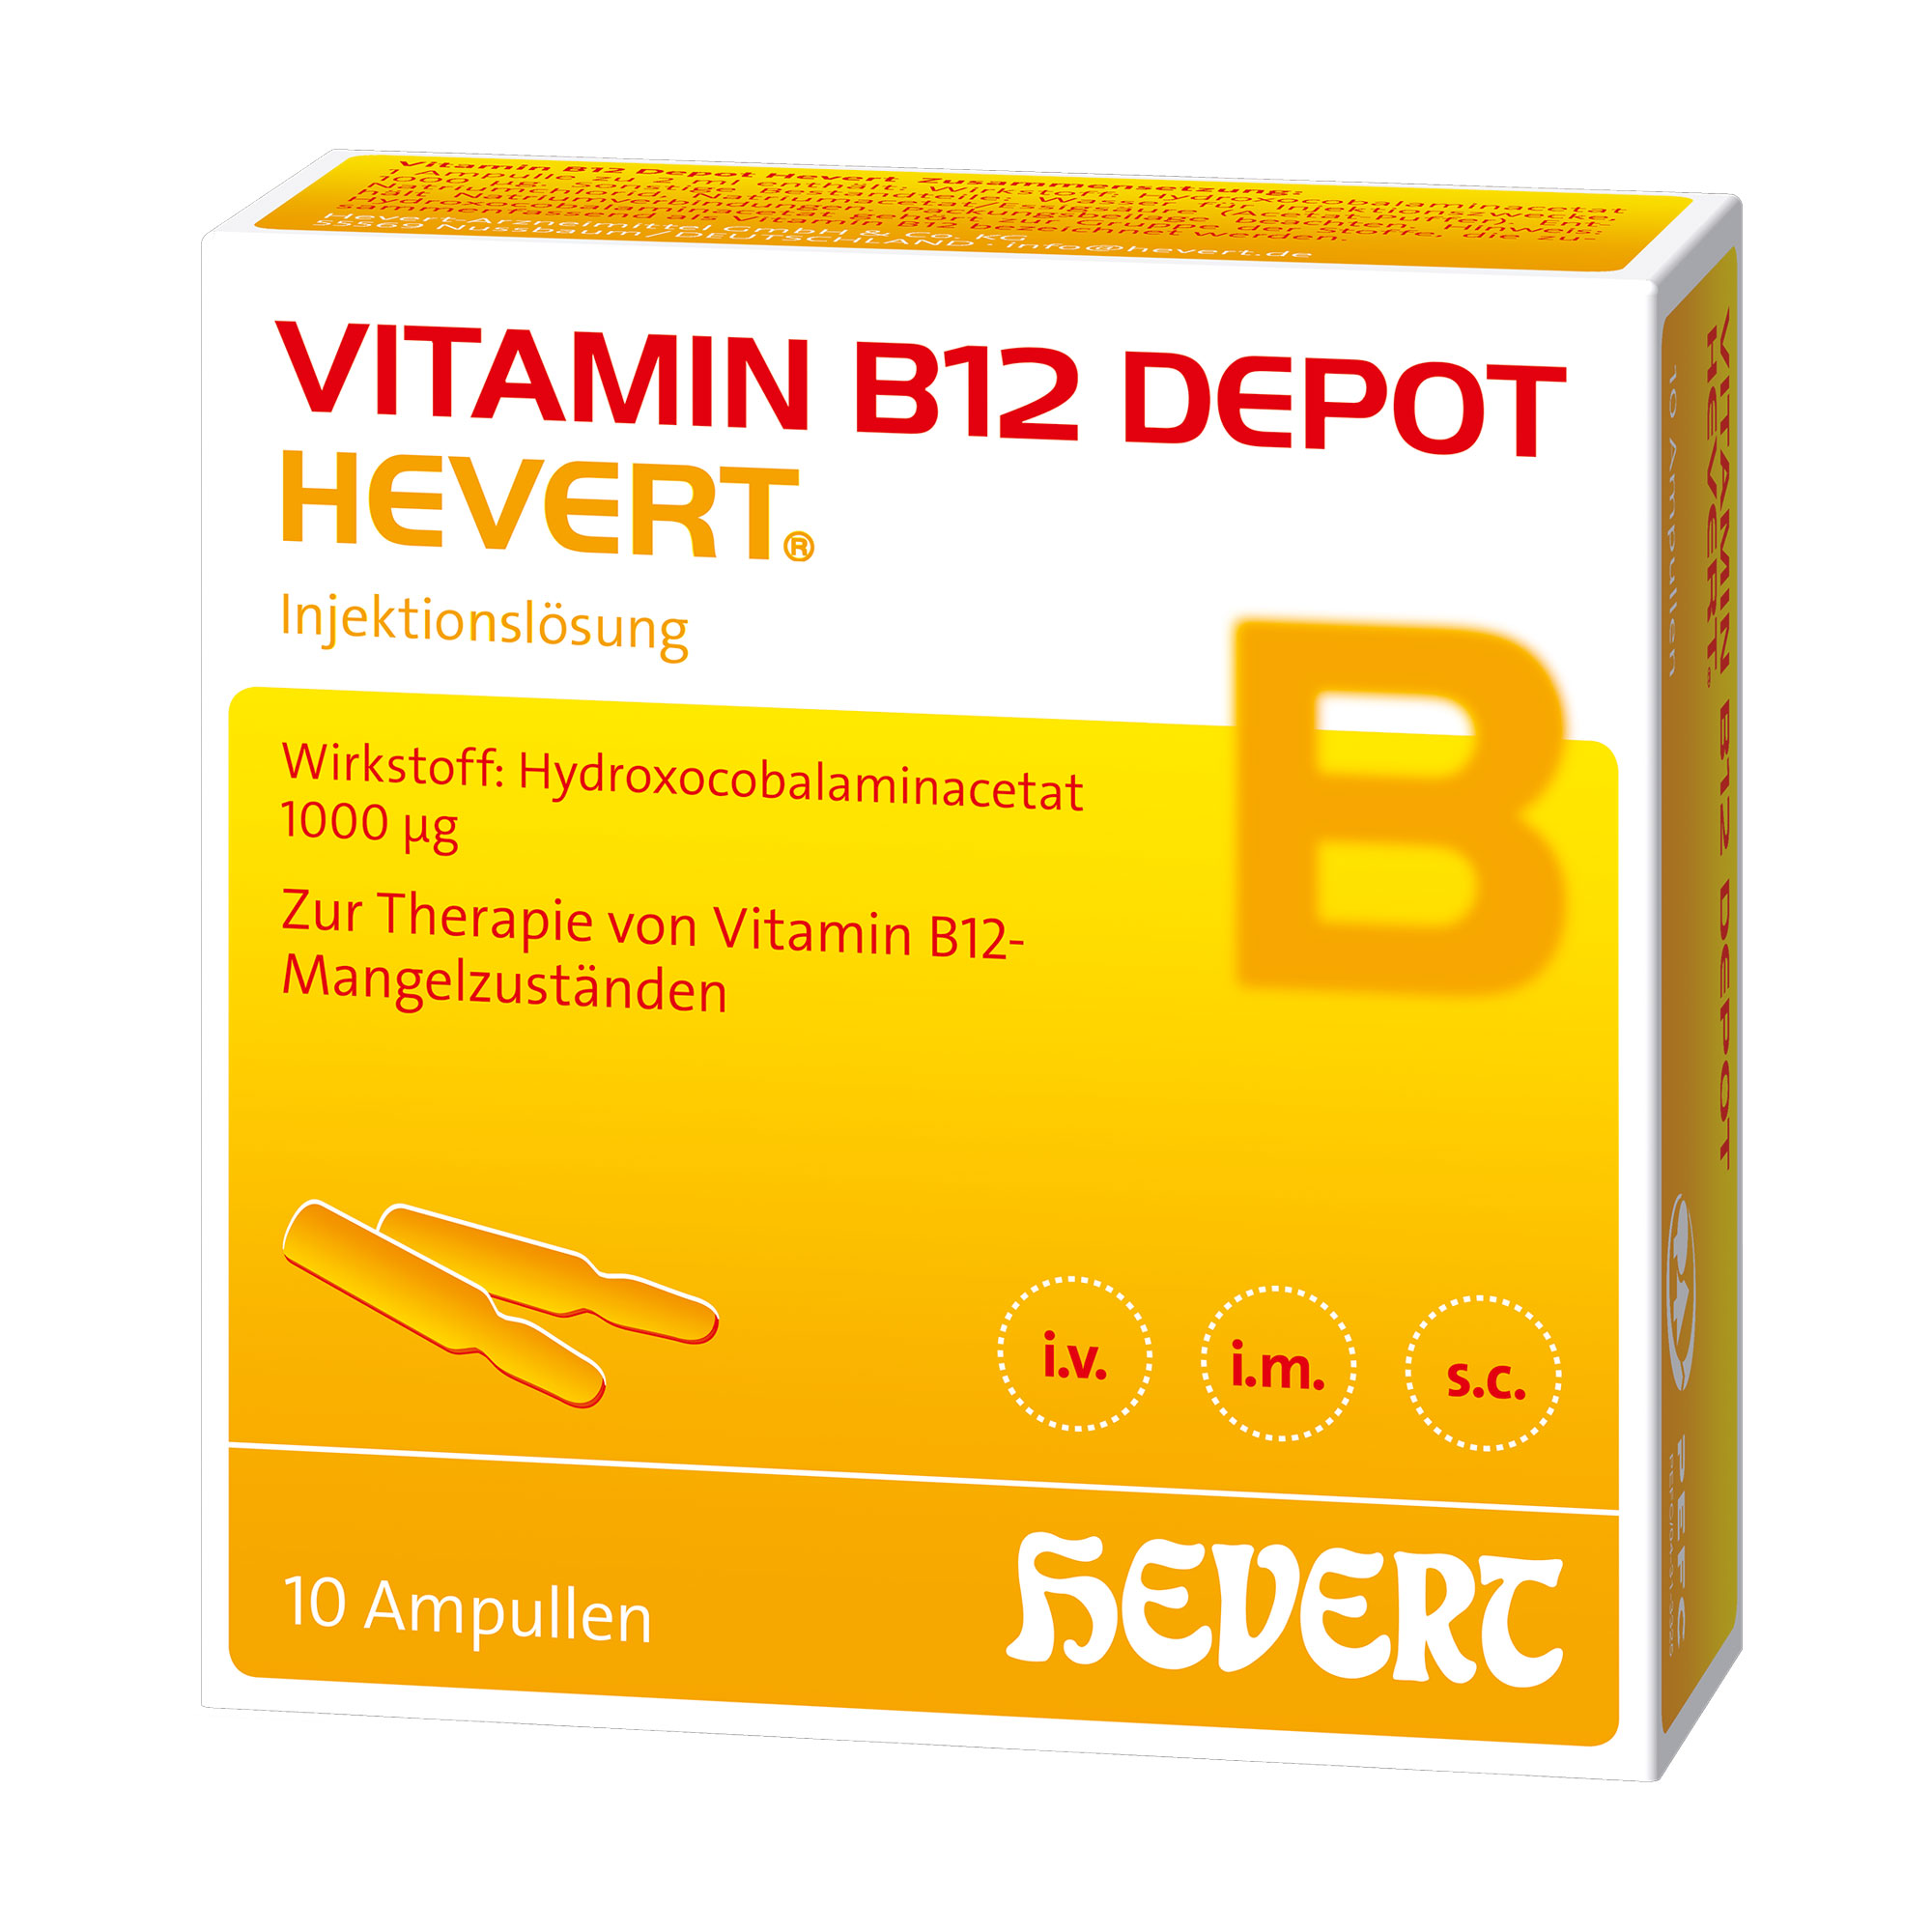 Vitaminpräparat bei Vitamin B12-Mangel, der ernährungsmäßig nicht behoben werden kann.